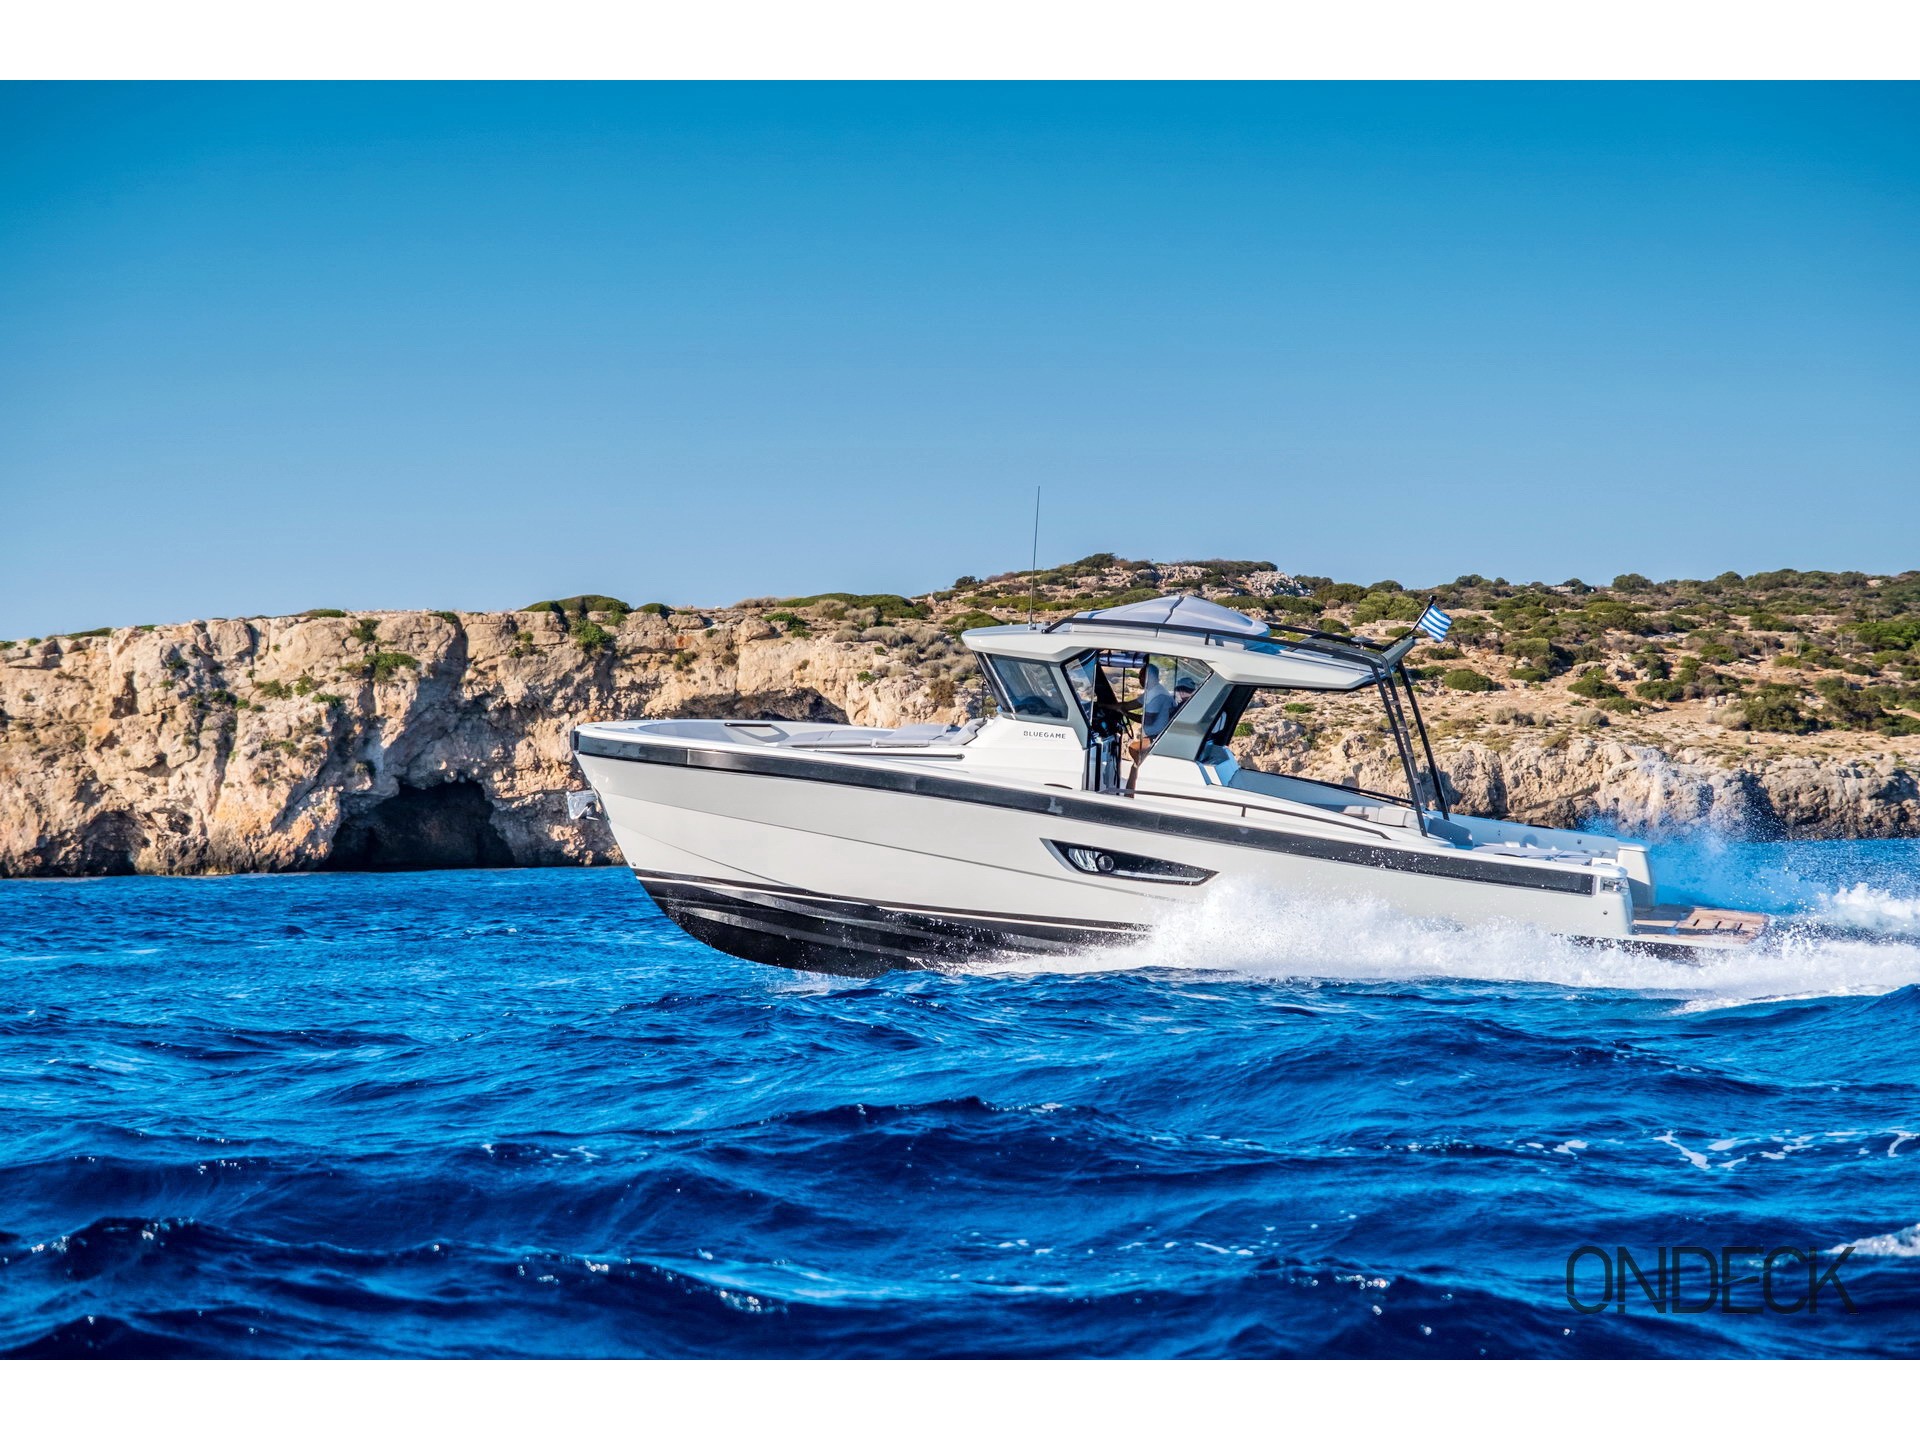 Skipper 30 - Motor Boat Charter Greece & Boat hire in Greece Cyclades Islands Mykonos Mykonos 1